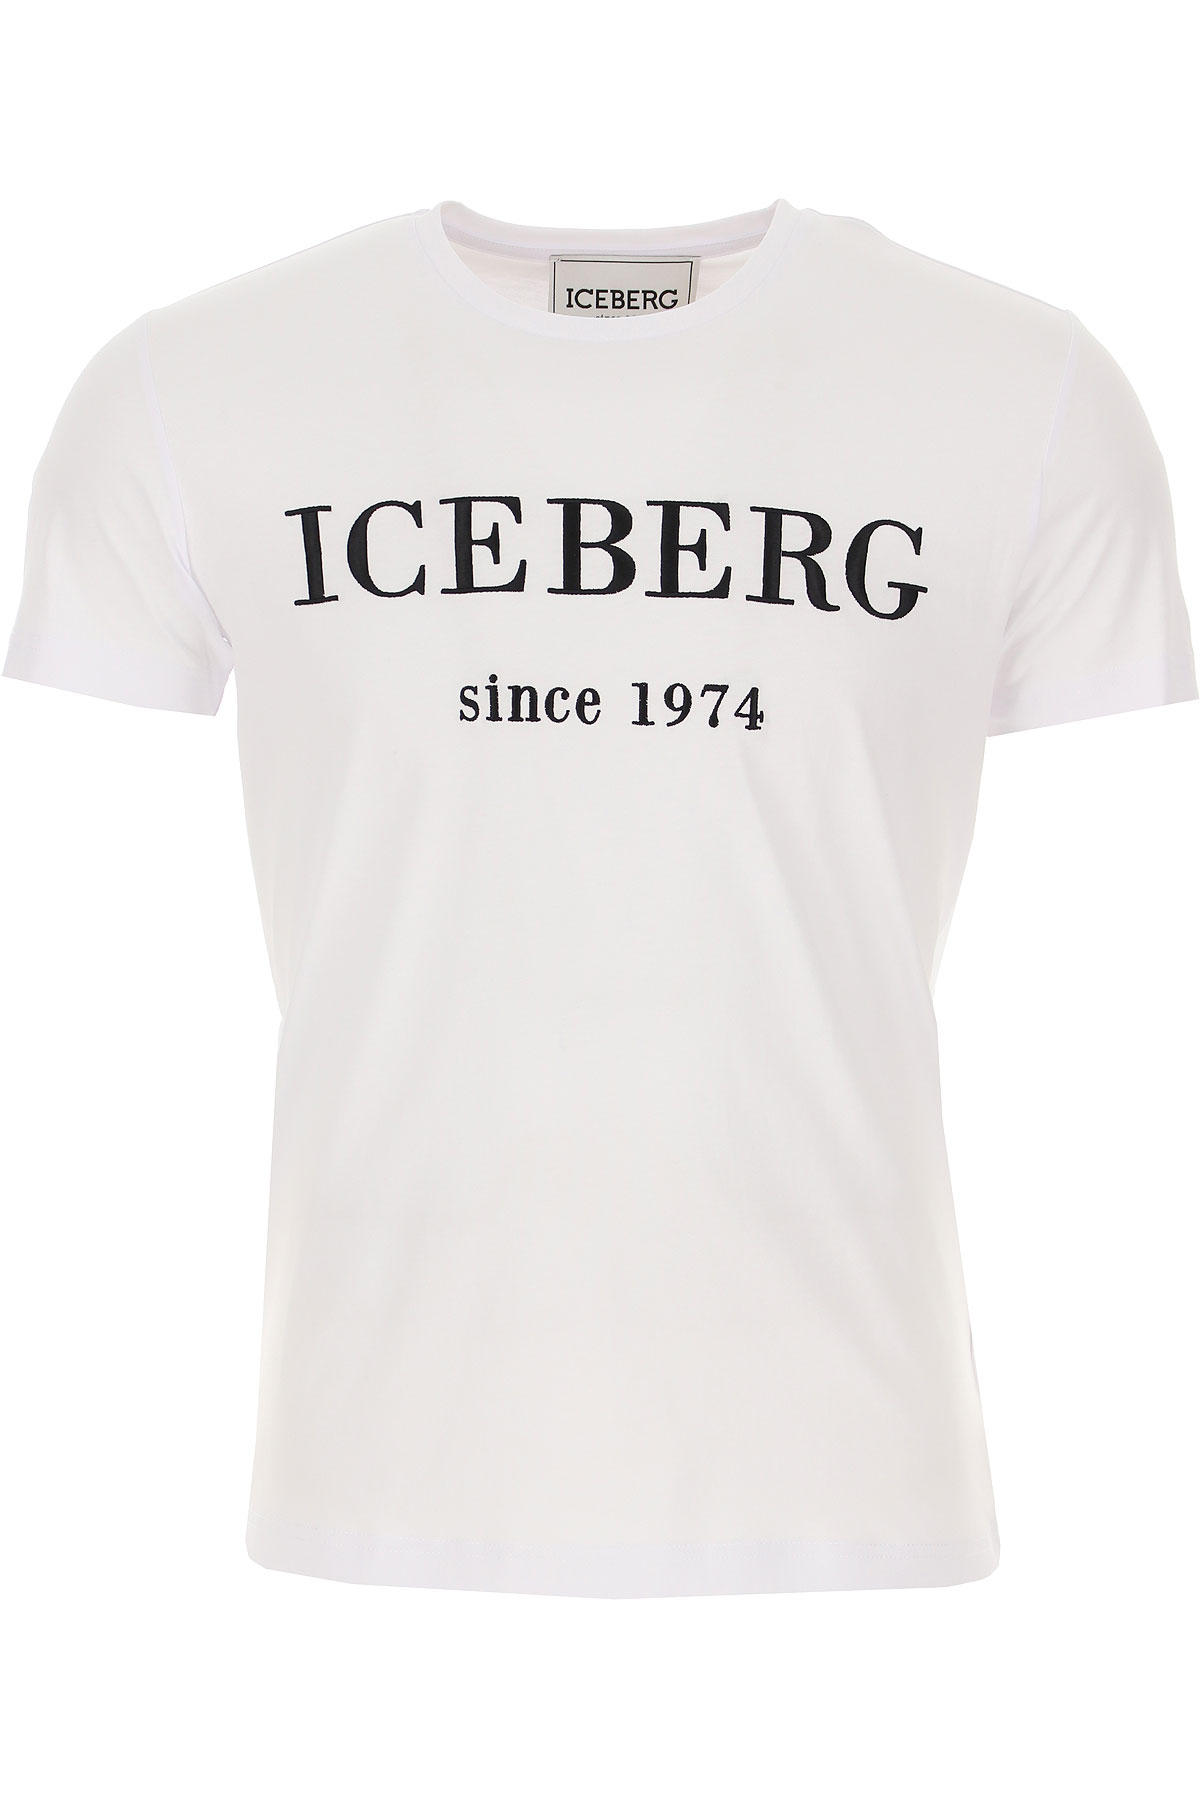 iceberg clothing store